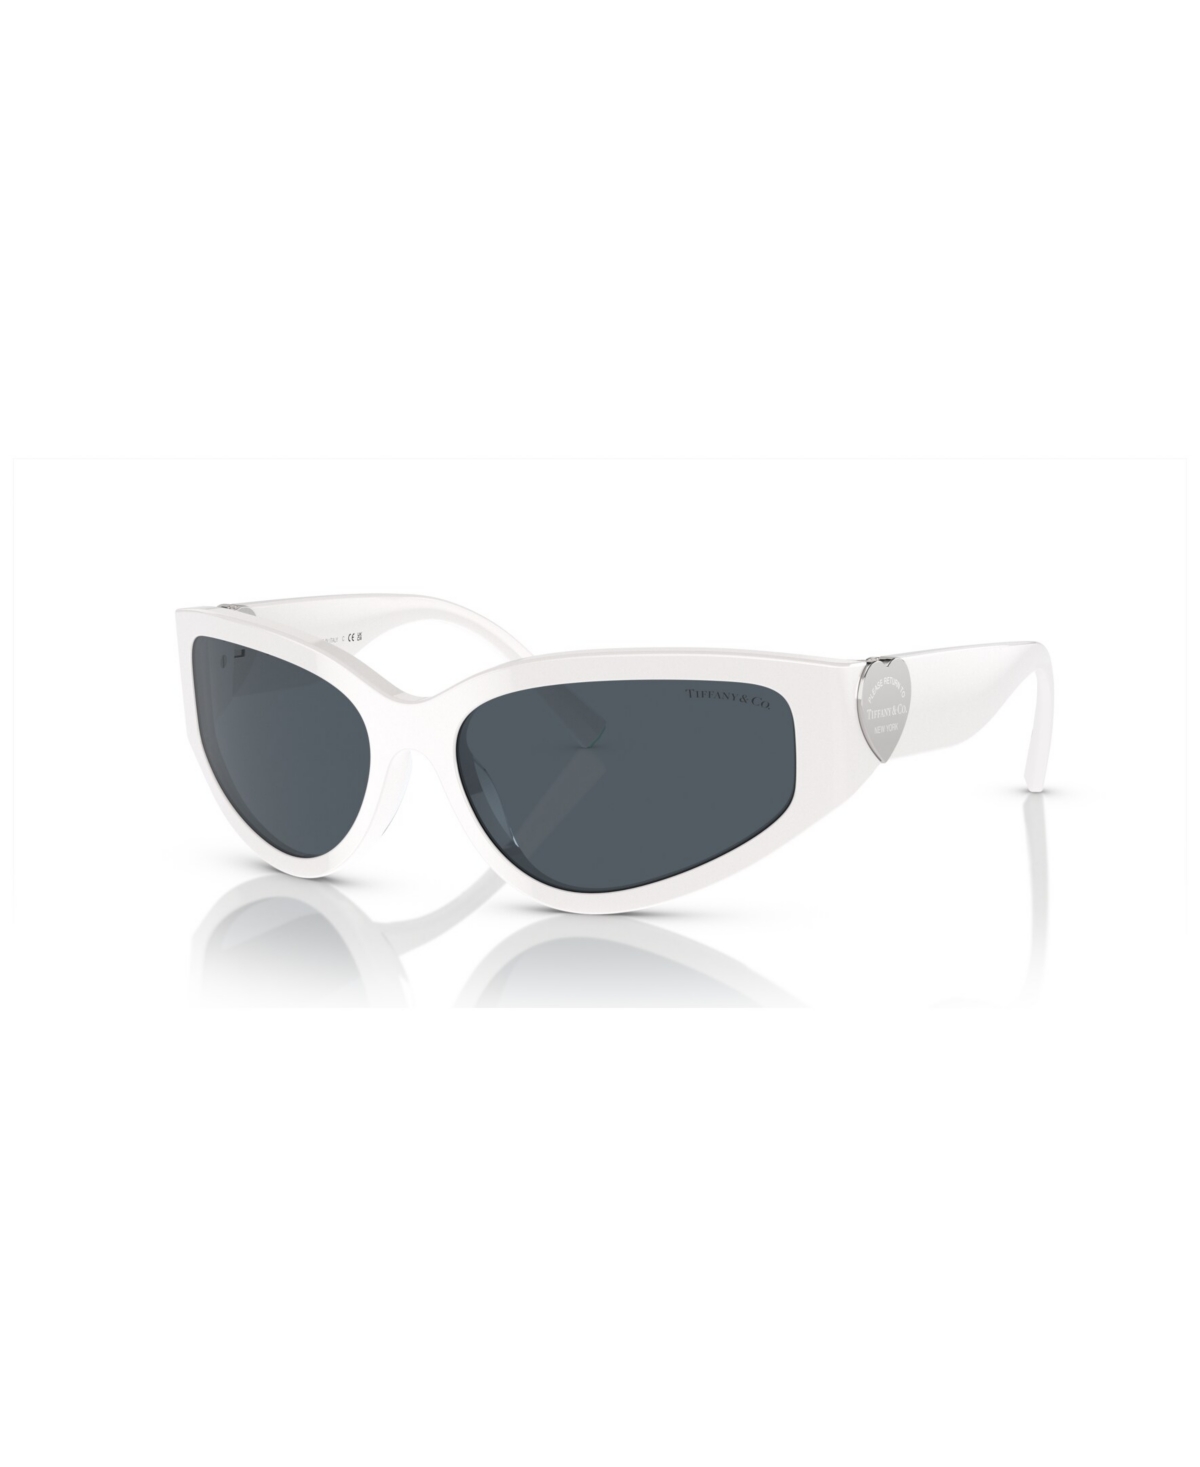 Tiffany & Co Women's Sunglasses Tf4217 In Bright White